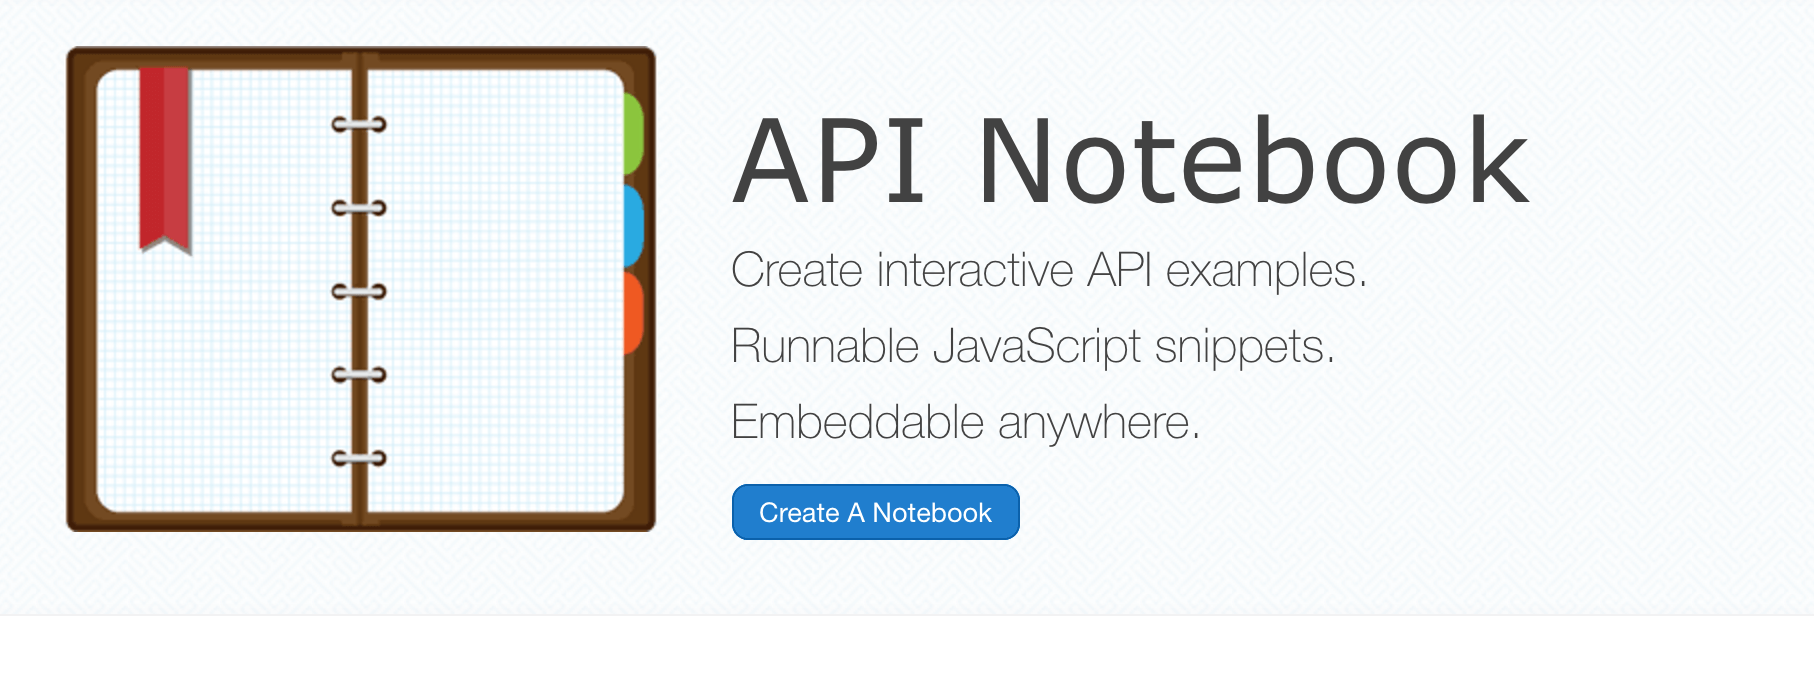 API Notebook